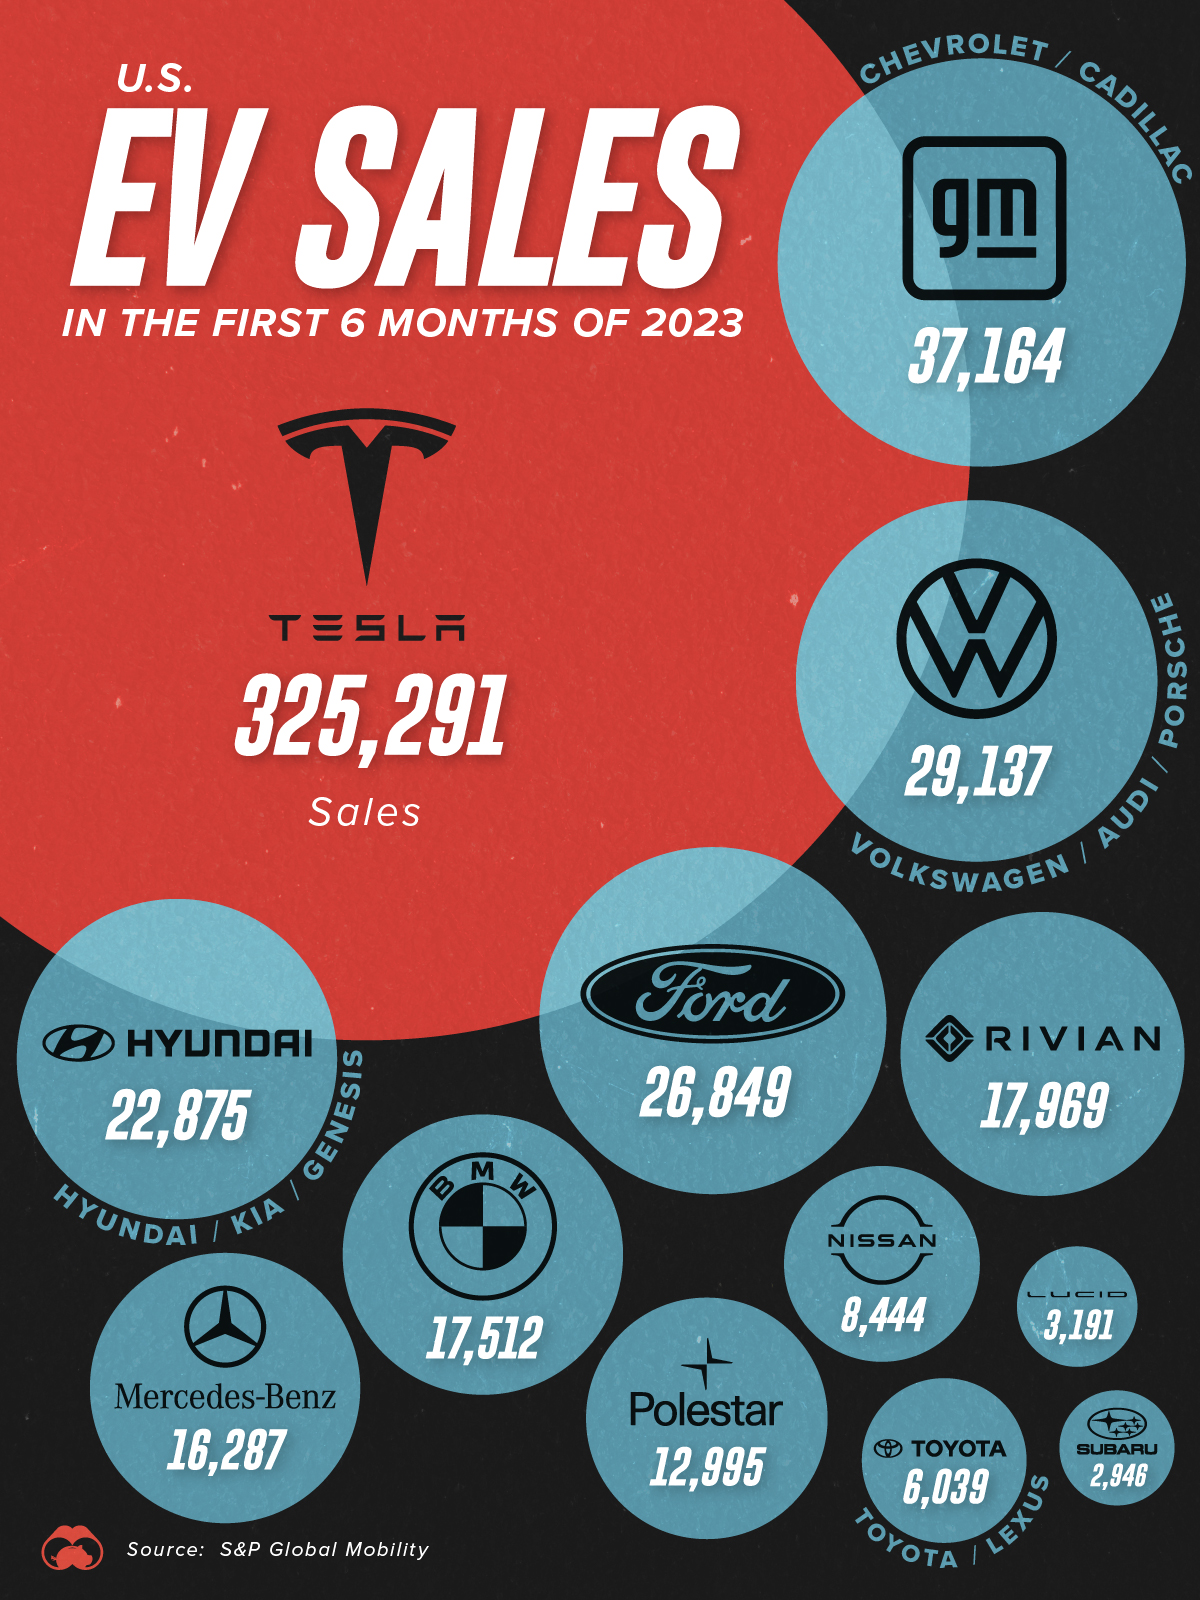 Visualizing U.S. EV Sales in H1 2023